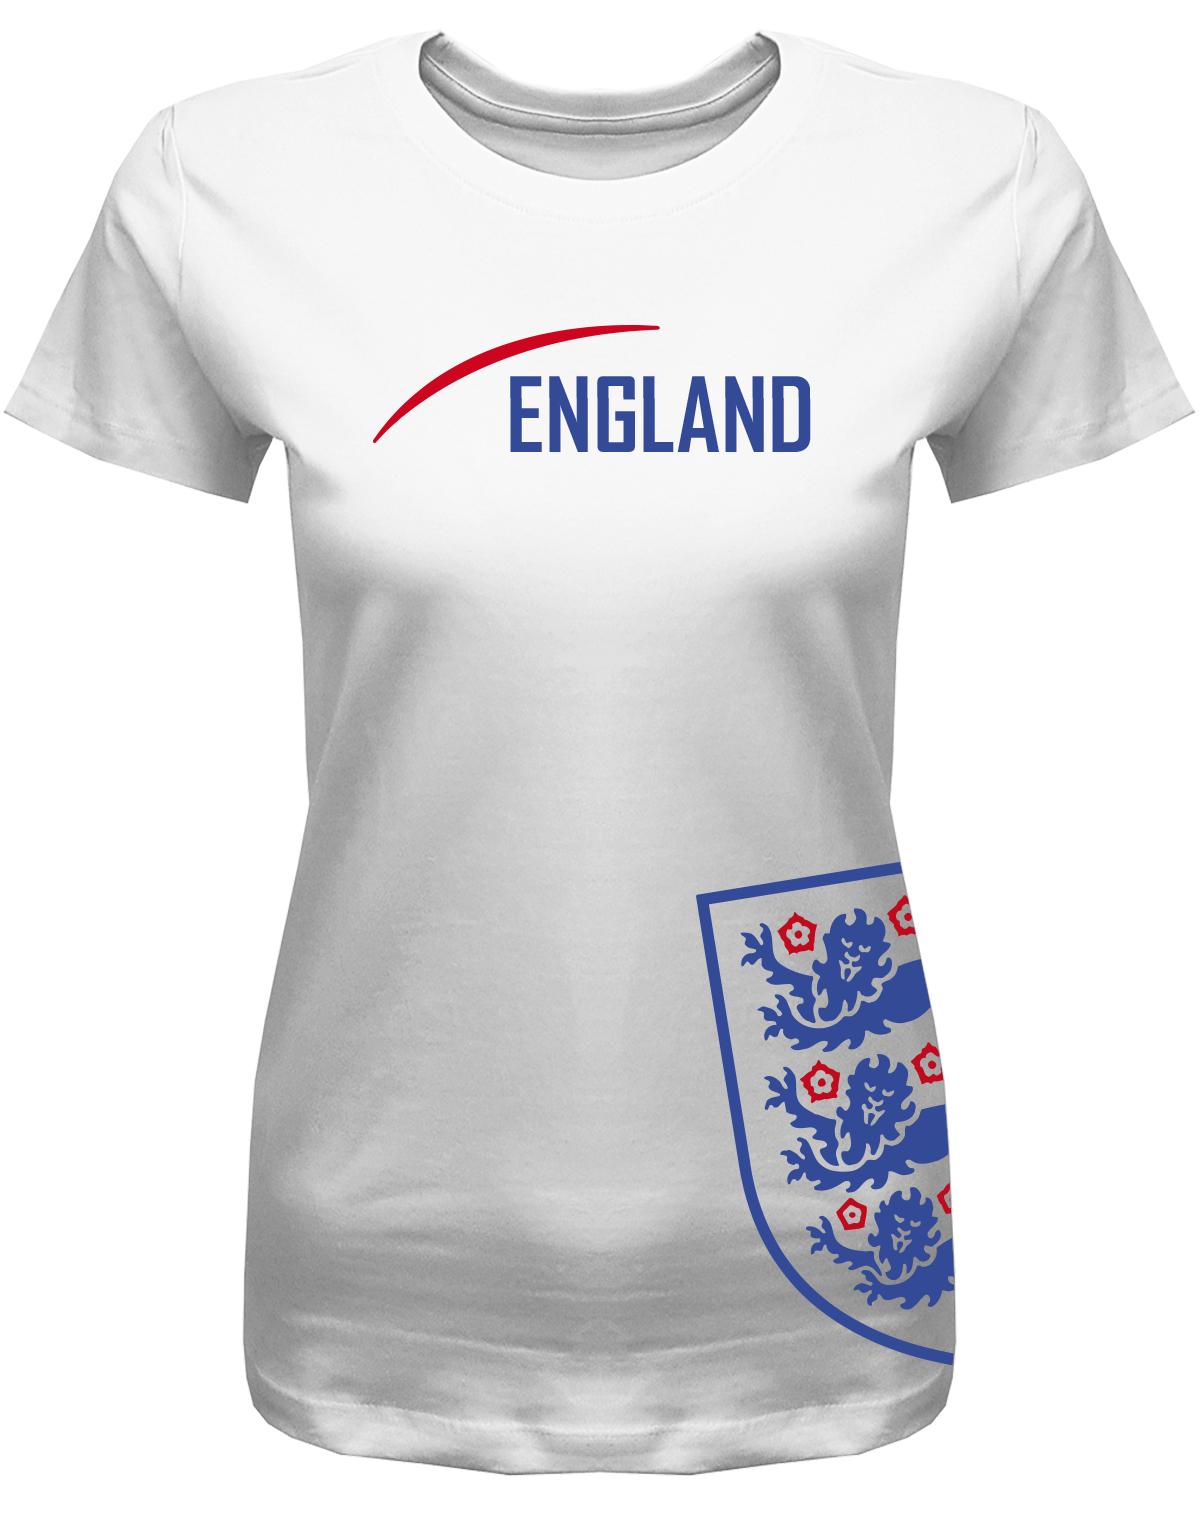 England-Damen-Shirt-Weiss